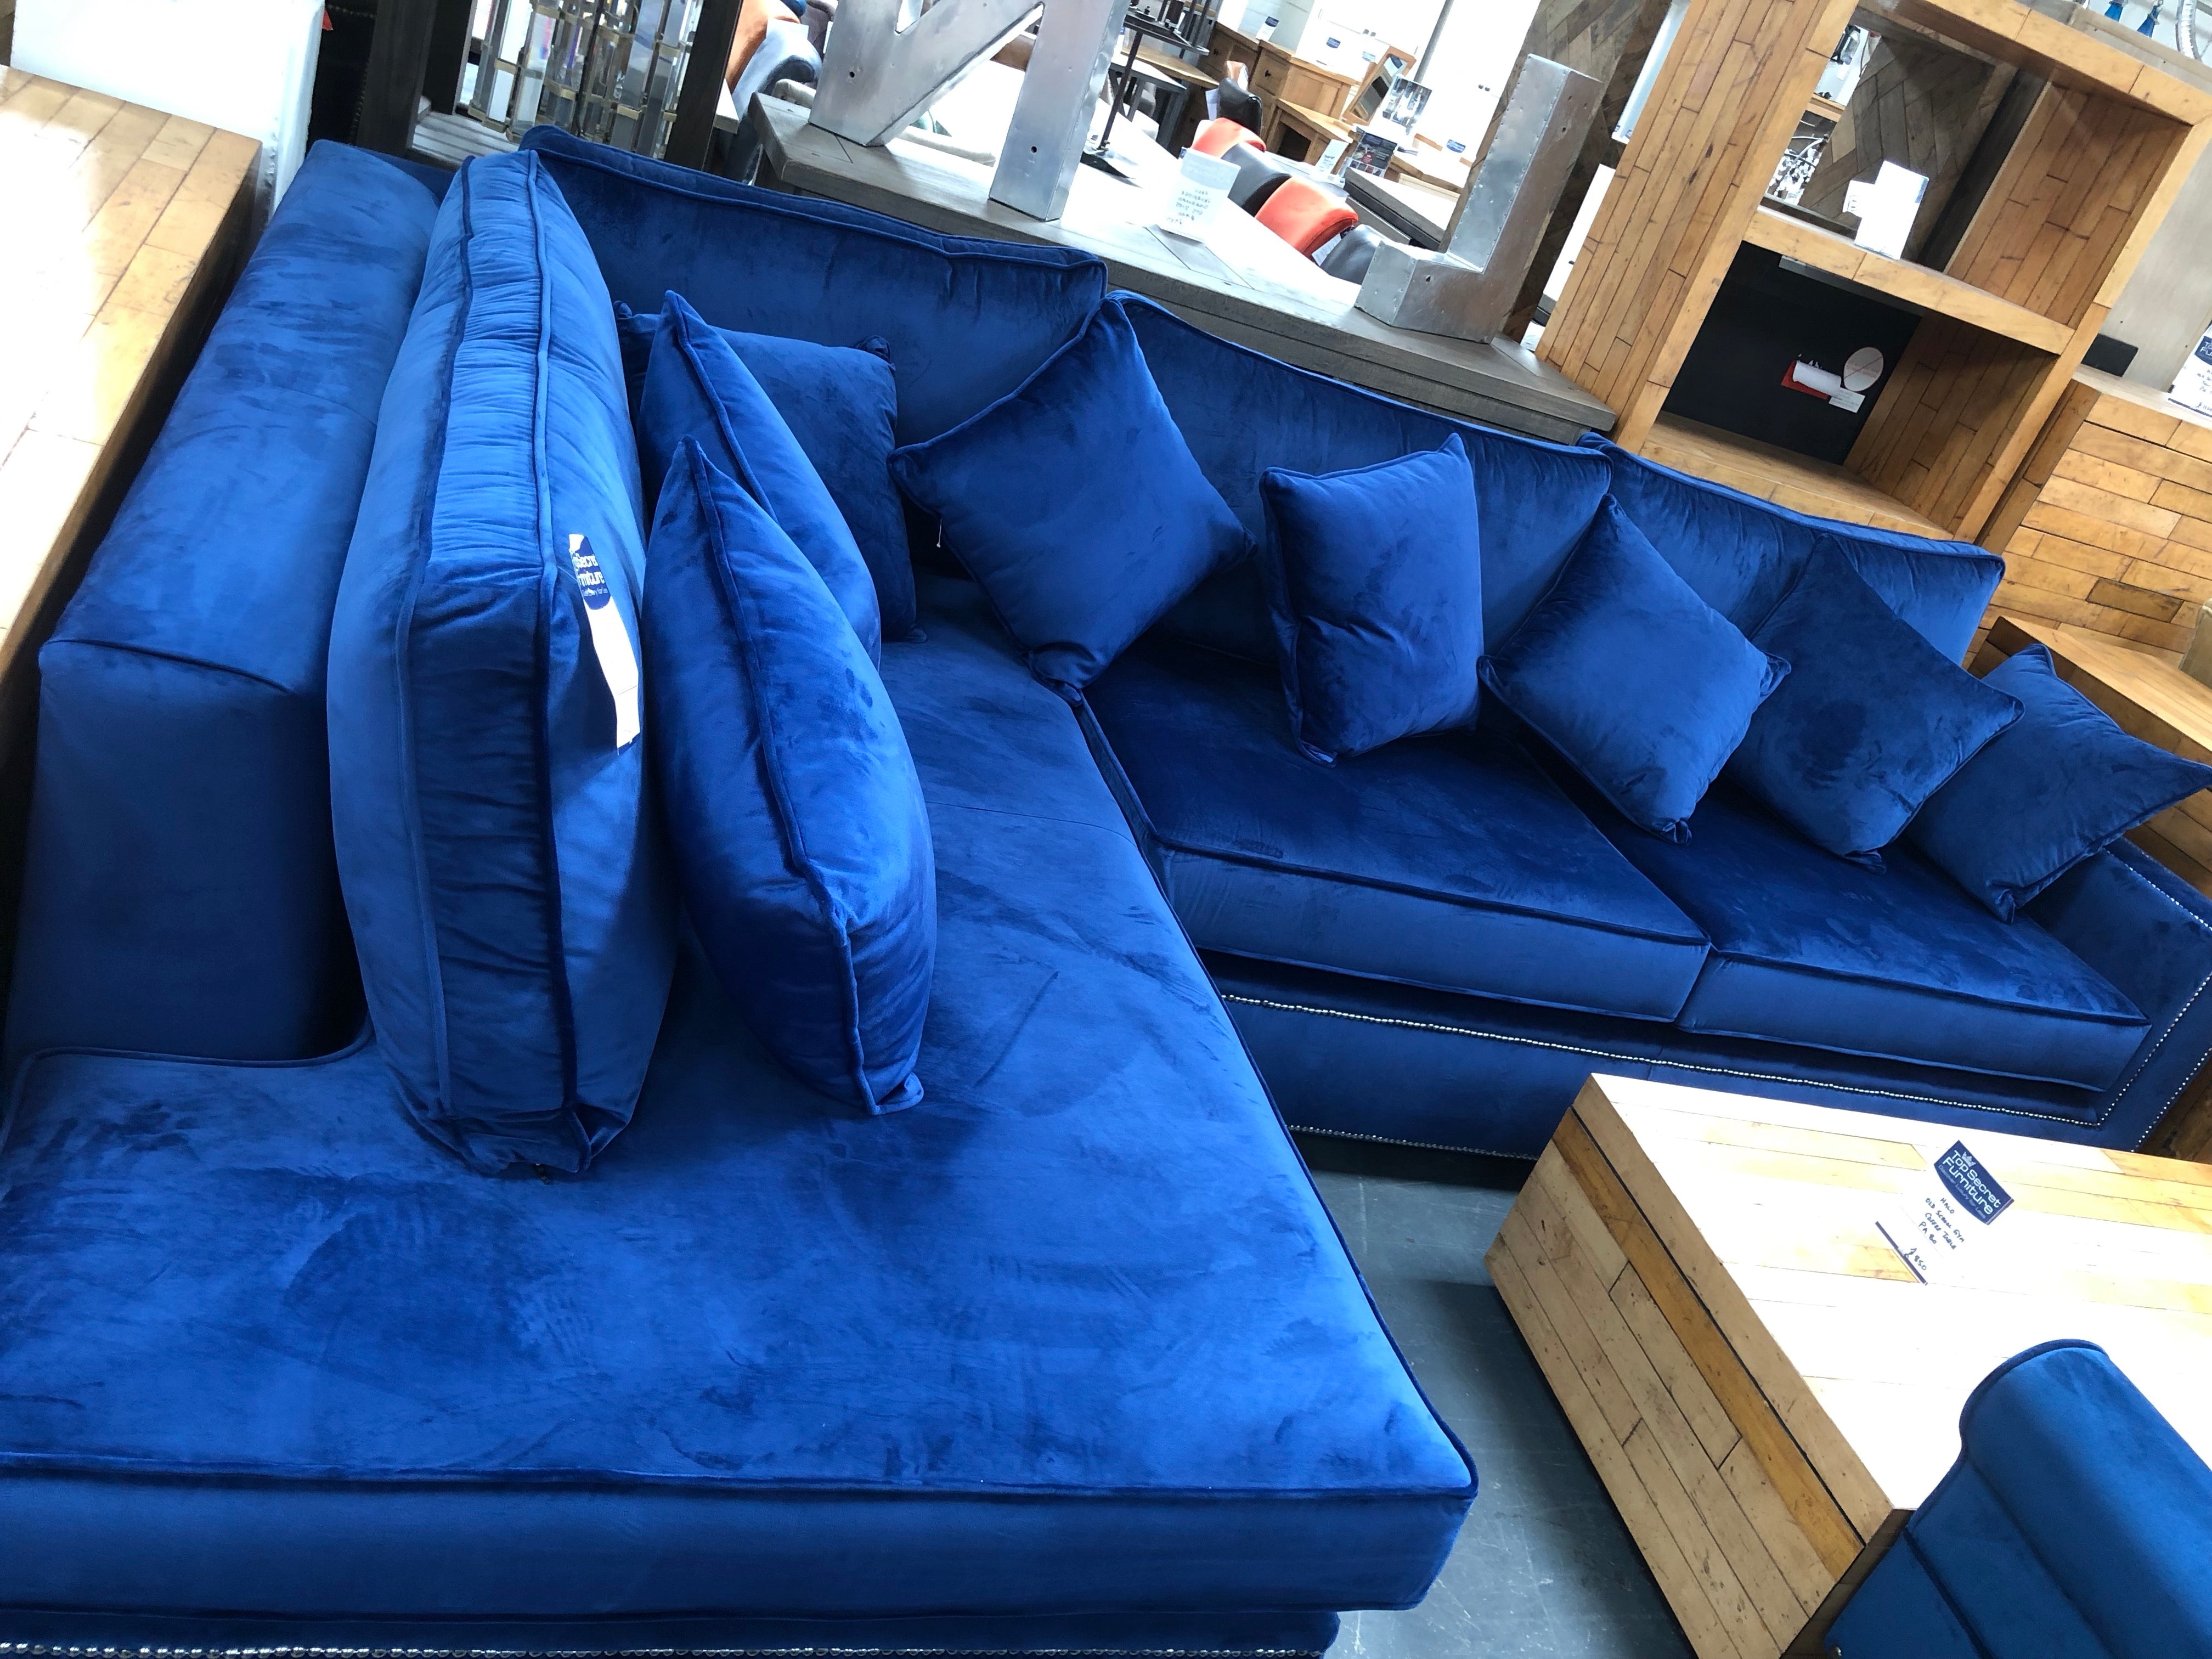 Best Blue Velvet Sofas, Furniture University